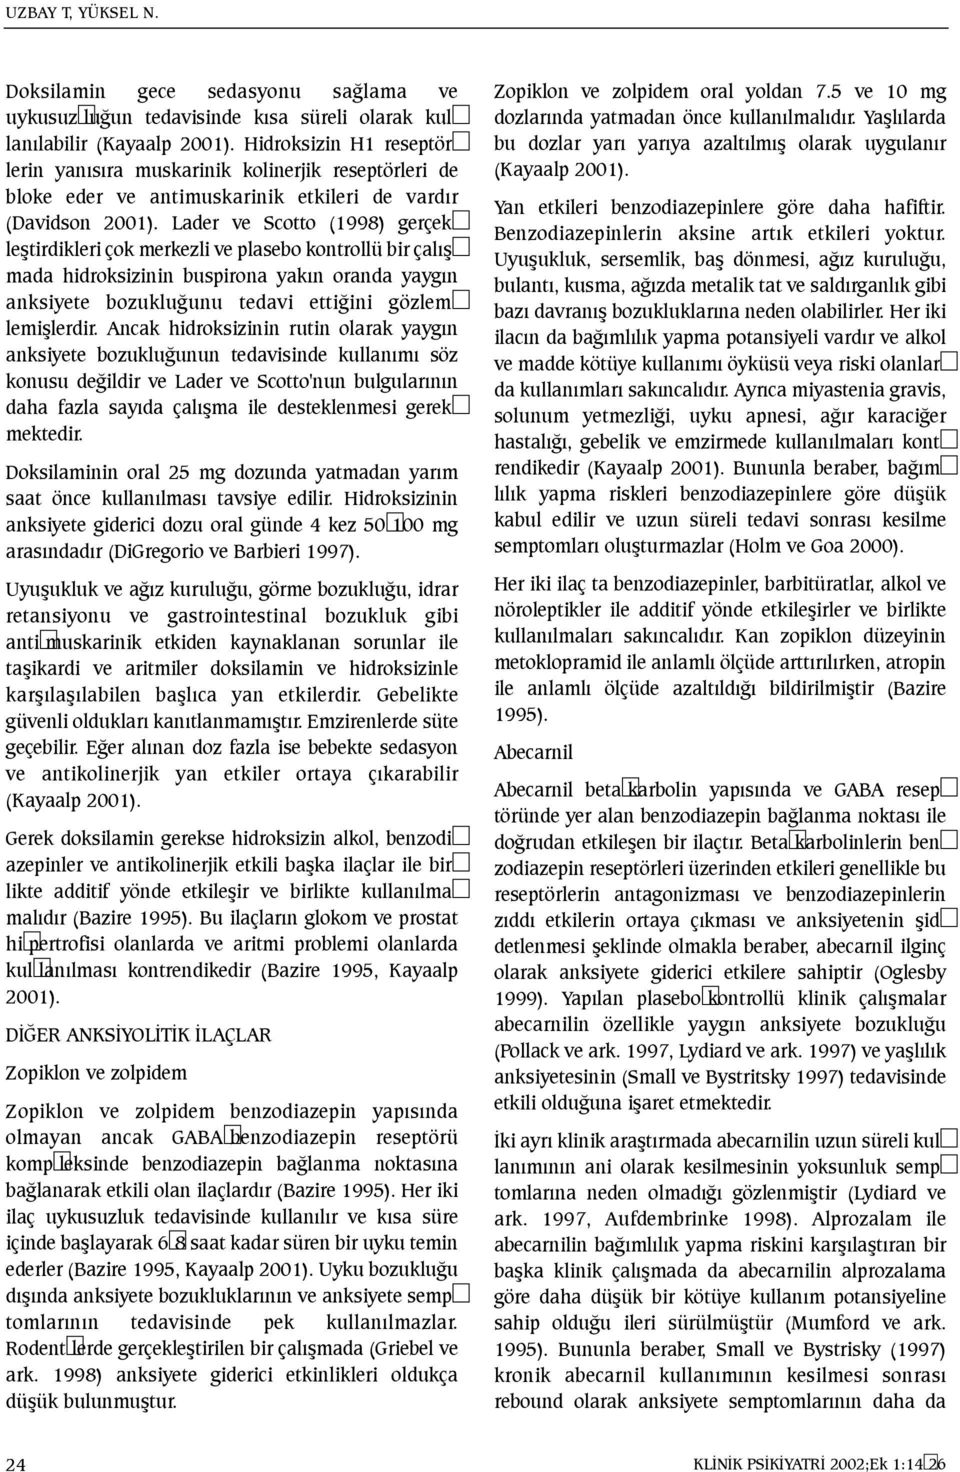 Lader ve Scotto (1998) gerçekleþtirdikleri çok merkezli ve plasebo kontrollü bir çalýþmada hidroksizinin buspirona yakýn oranda yaygýn anksiyete bozukluðunu tedavi ettiðini gözlemlemiþlerdir.